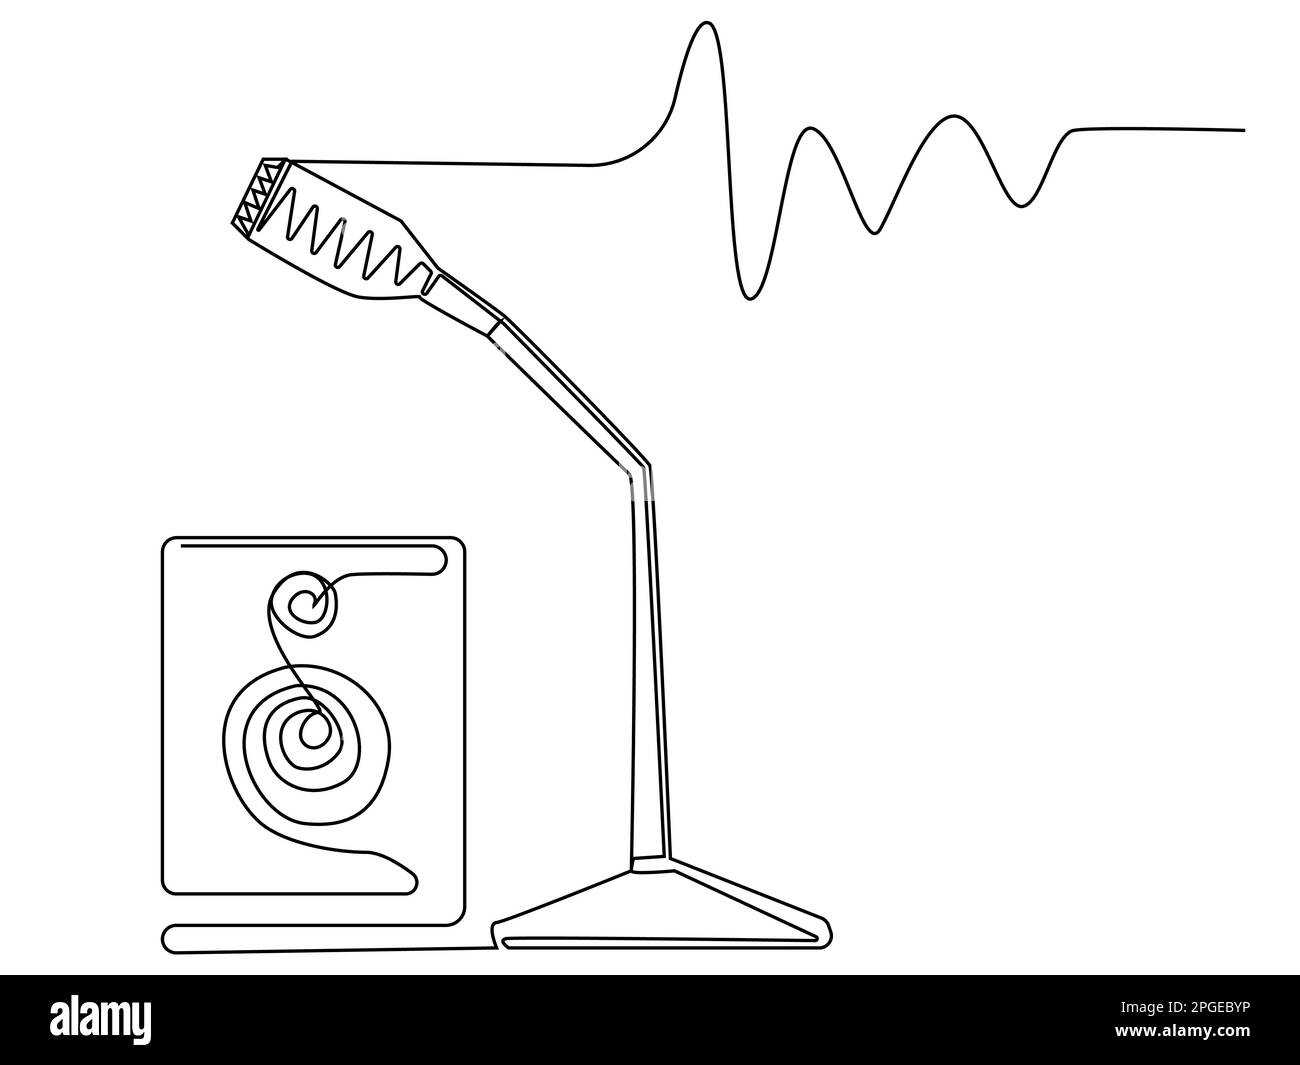 Piccolo microfono da tavolo in una riga su sfondo bianco. Illustrazione vettoriale con apparecchiatura sonora. Immagine musicale di scorta. Illustrazione Vettoriale